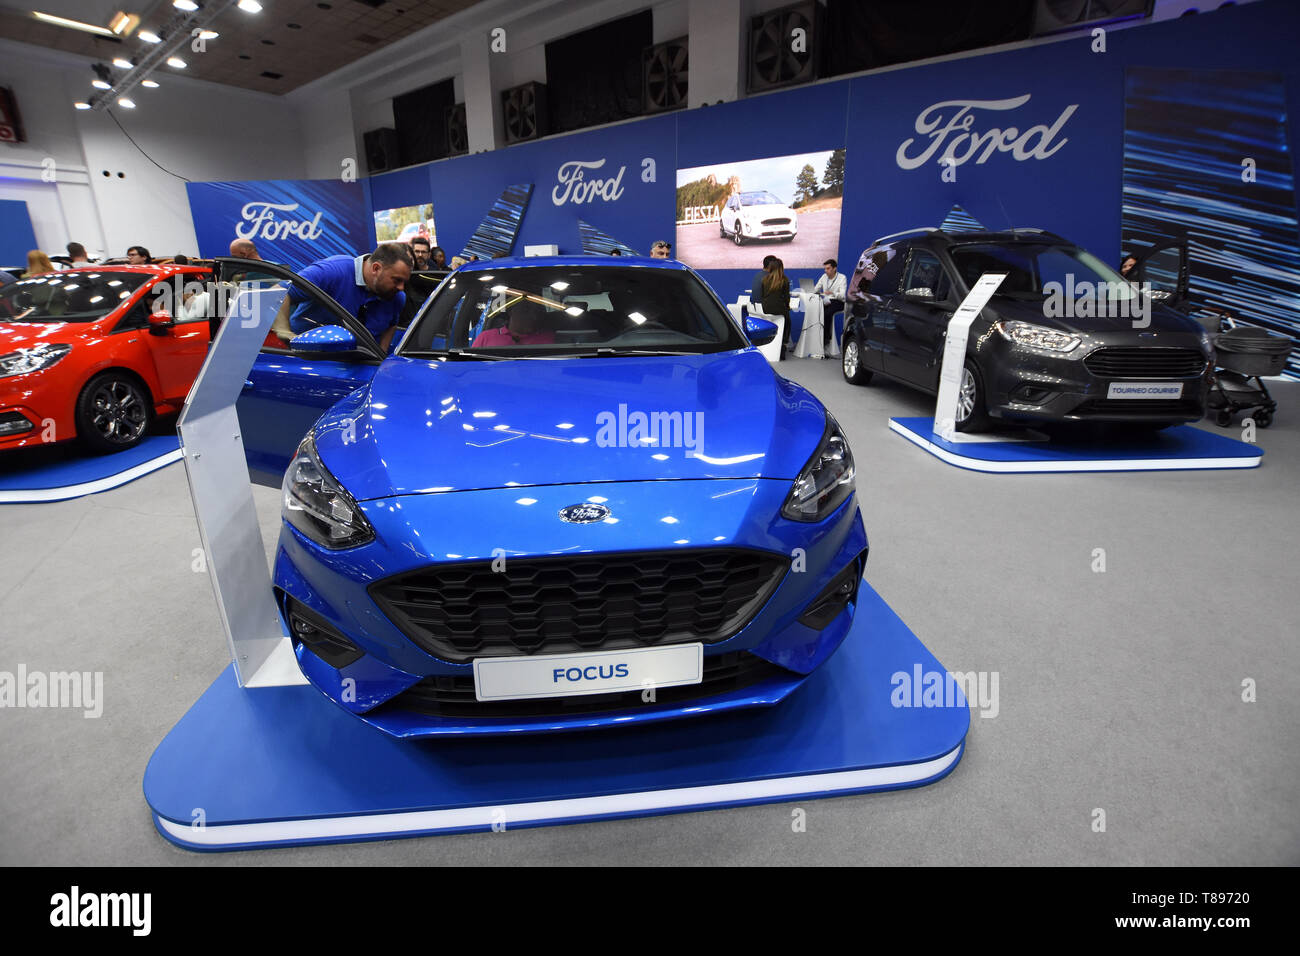 Allgemeiner Überblick über den Stand der Ford Auto Marke am Automobil Messe 2019 in Barcelona. Stockfoto